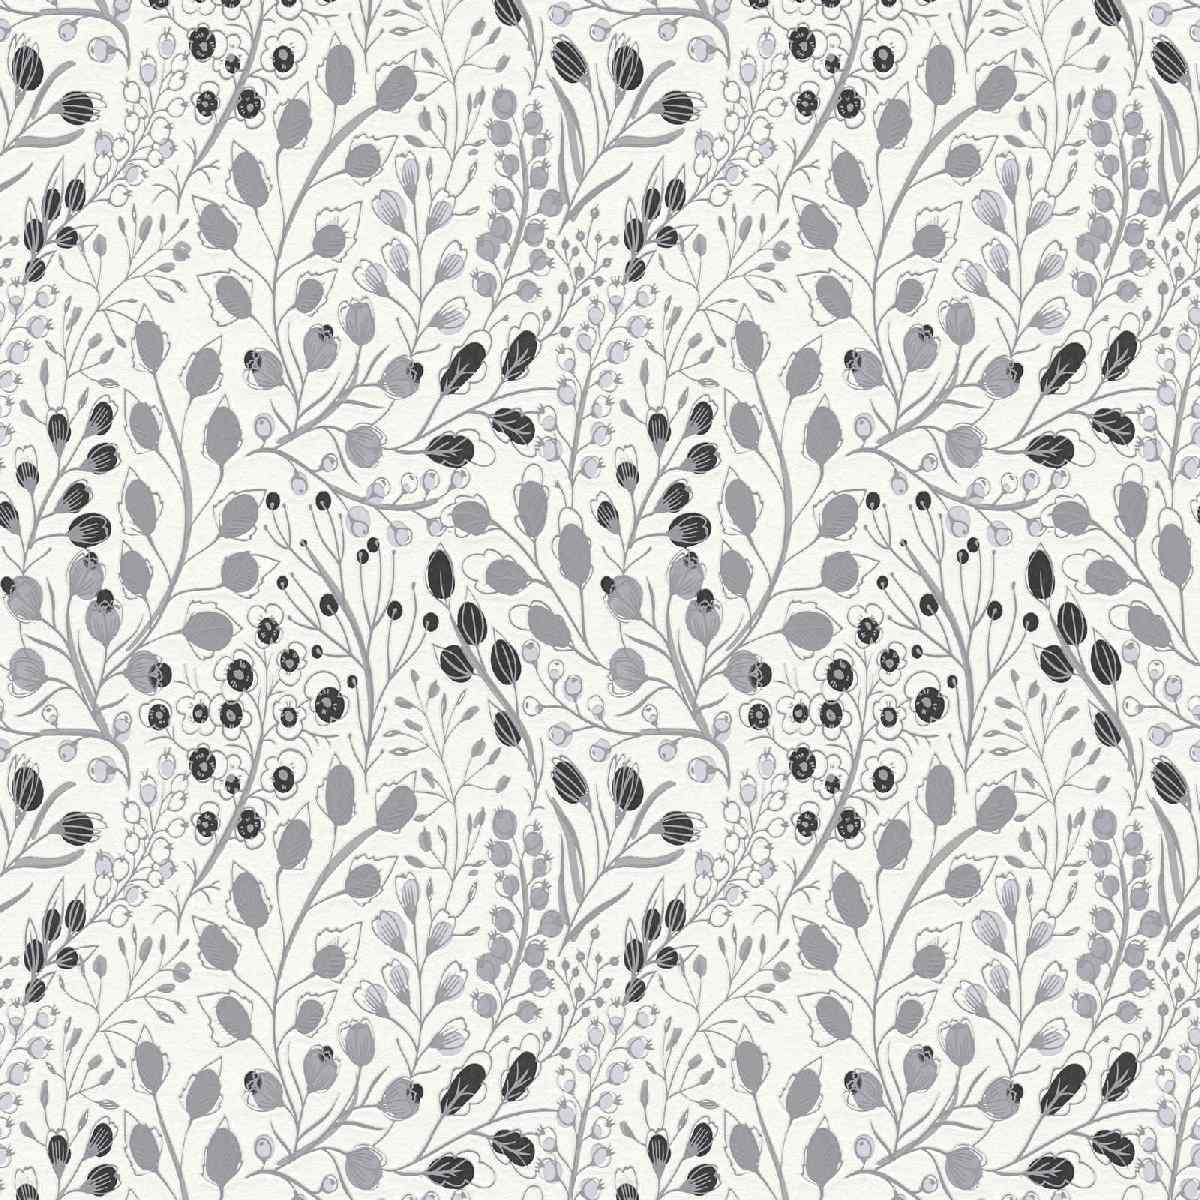 Vliestapete Attractive II 388473 - Floral Muster - Grau, Weiß